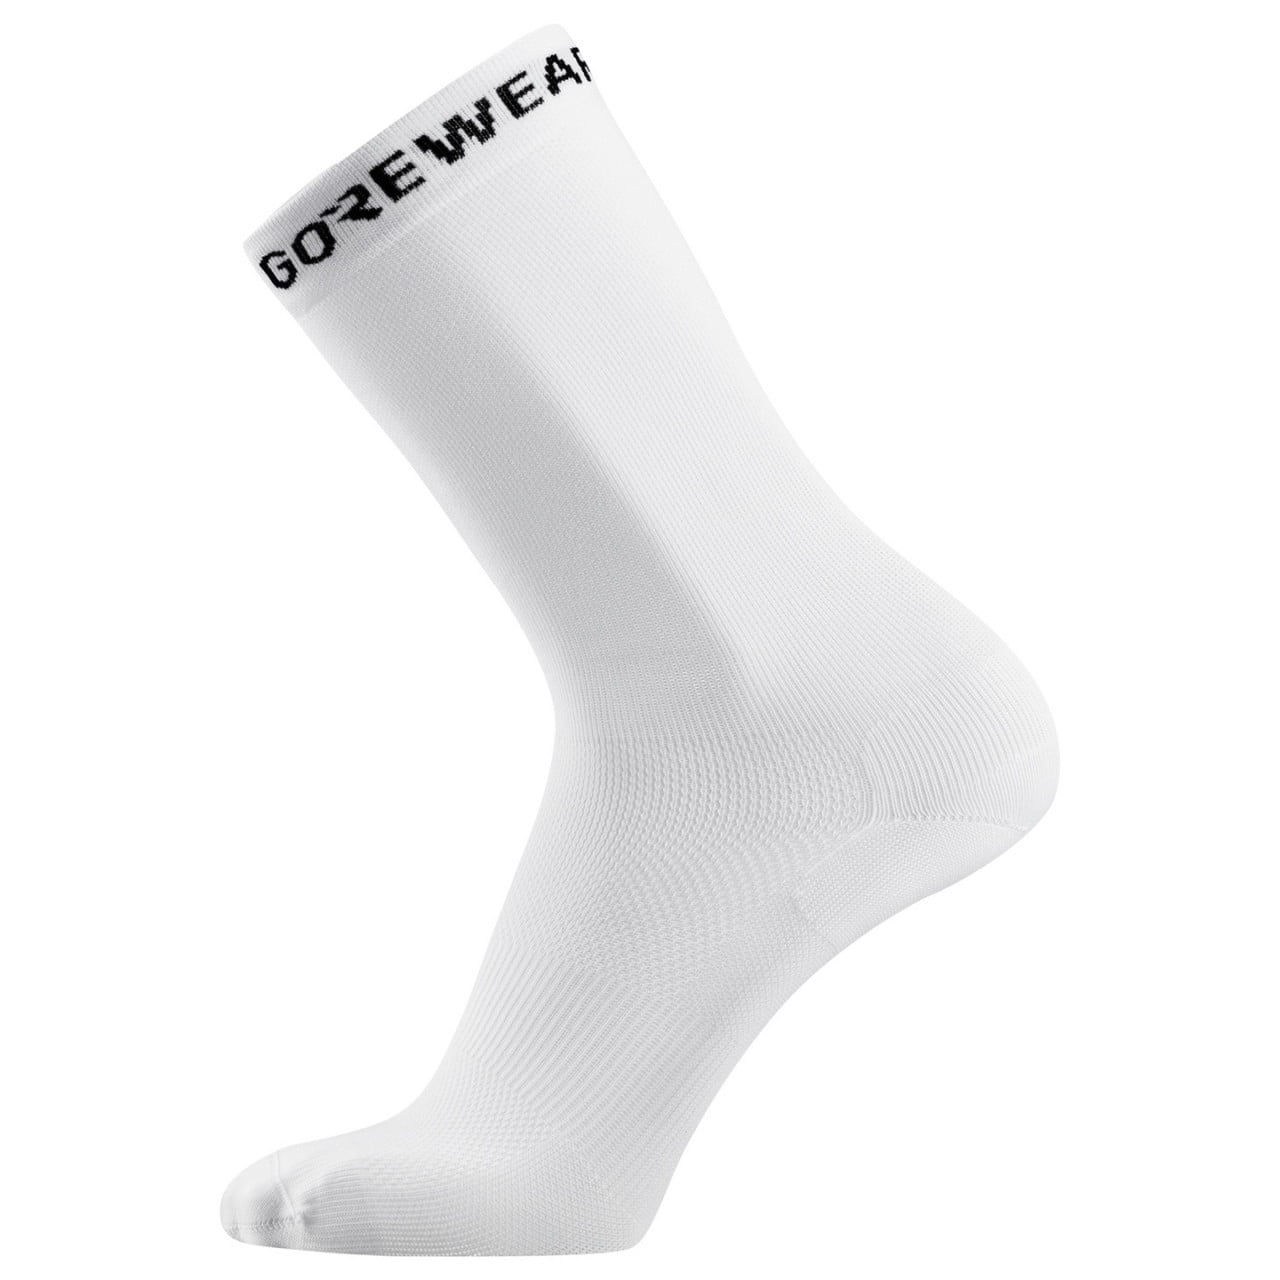 Essential Cycling Socks